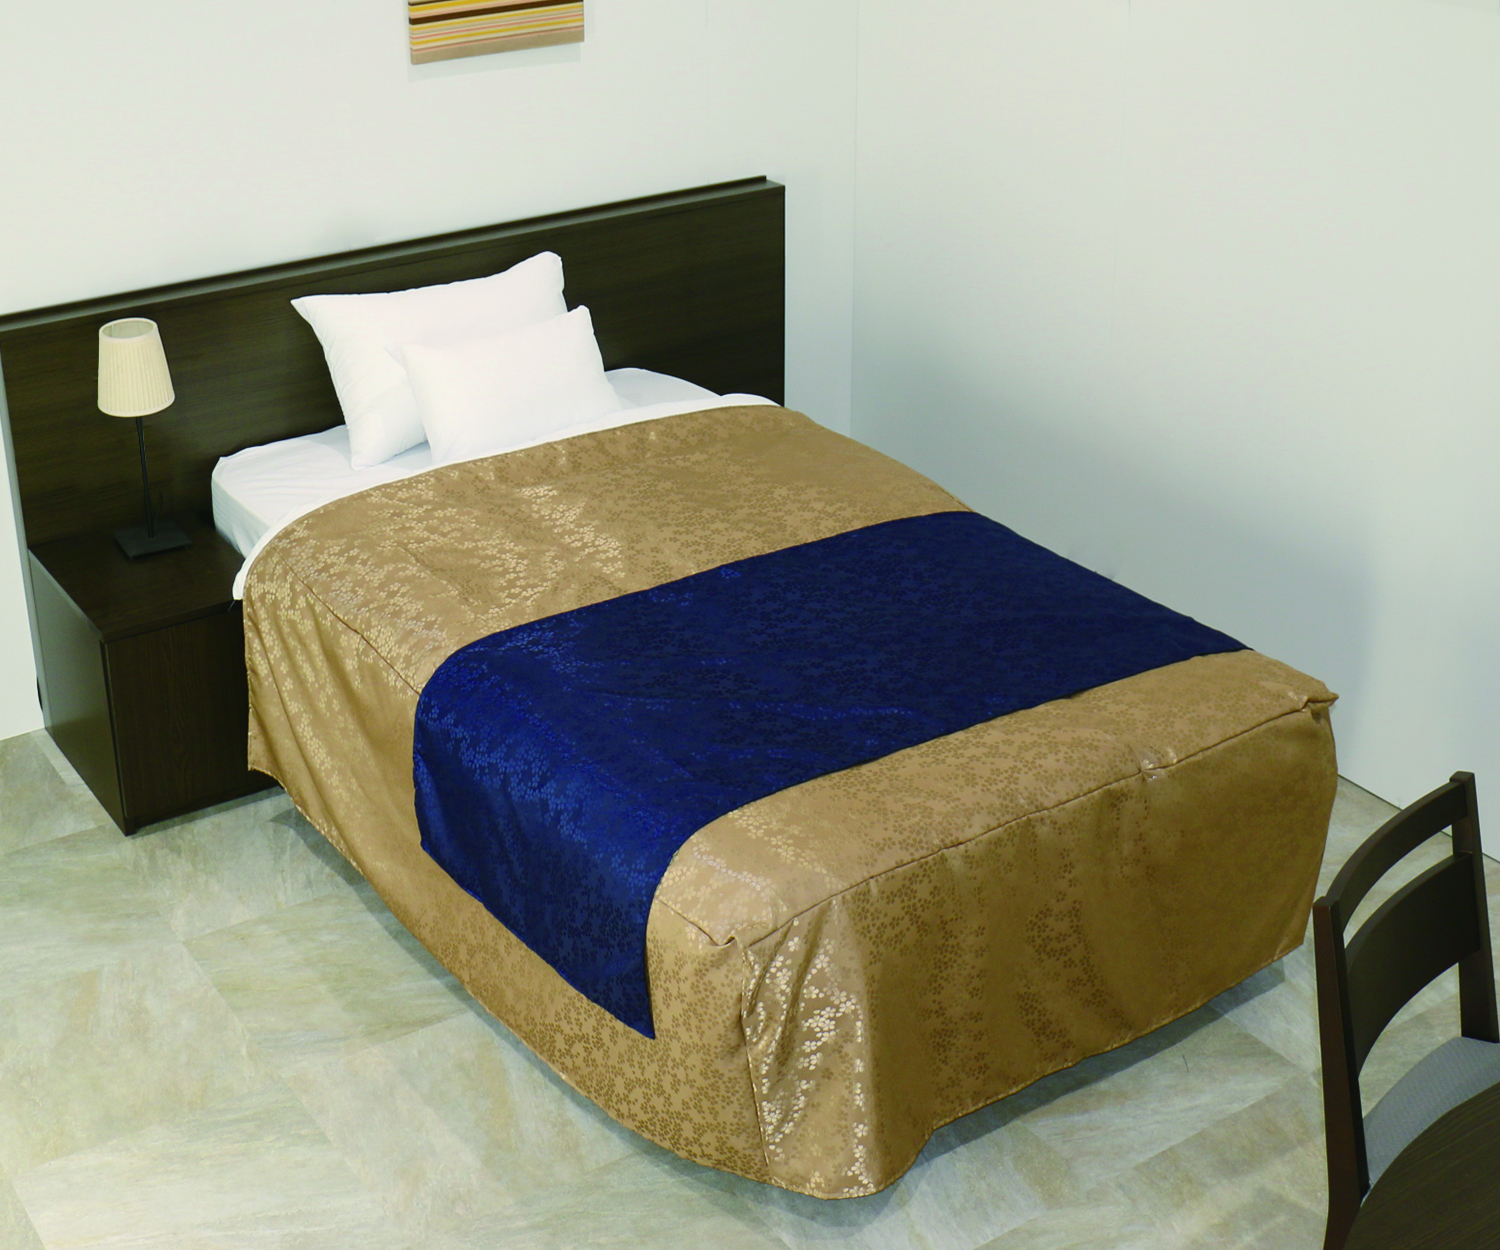 トモザワベッドによる寝装品サンプル1